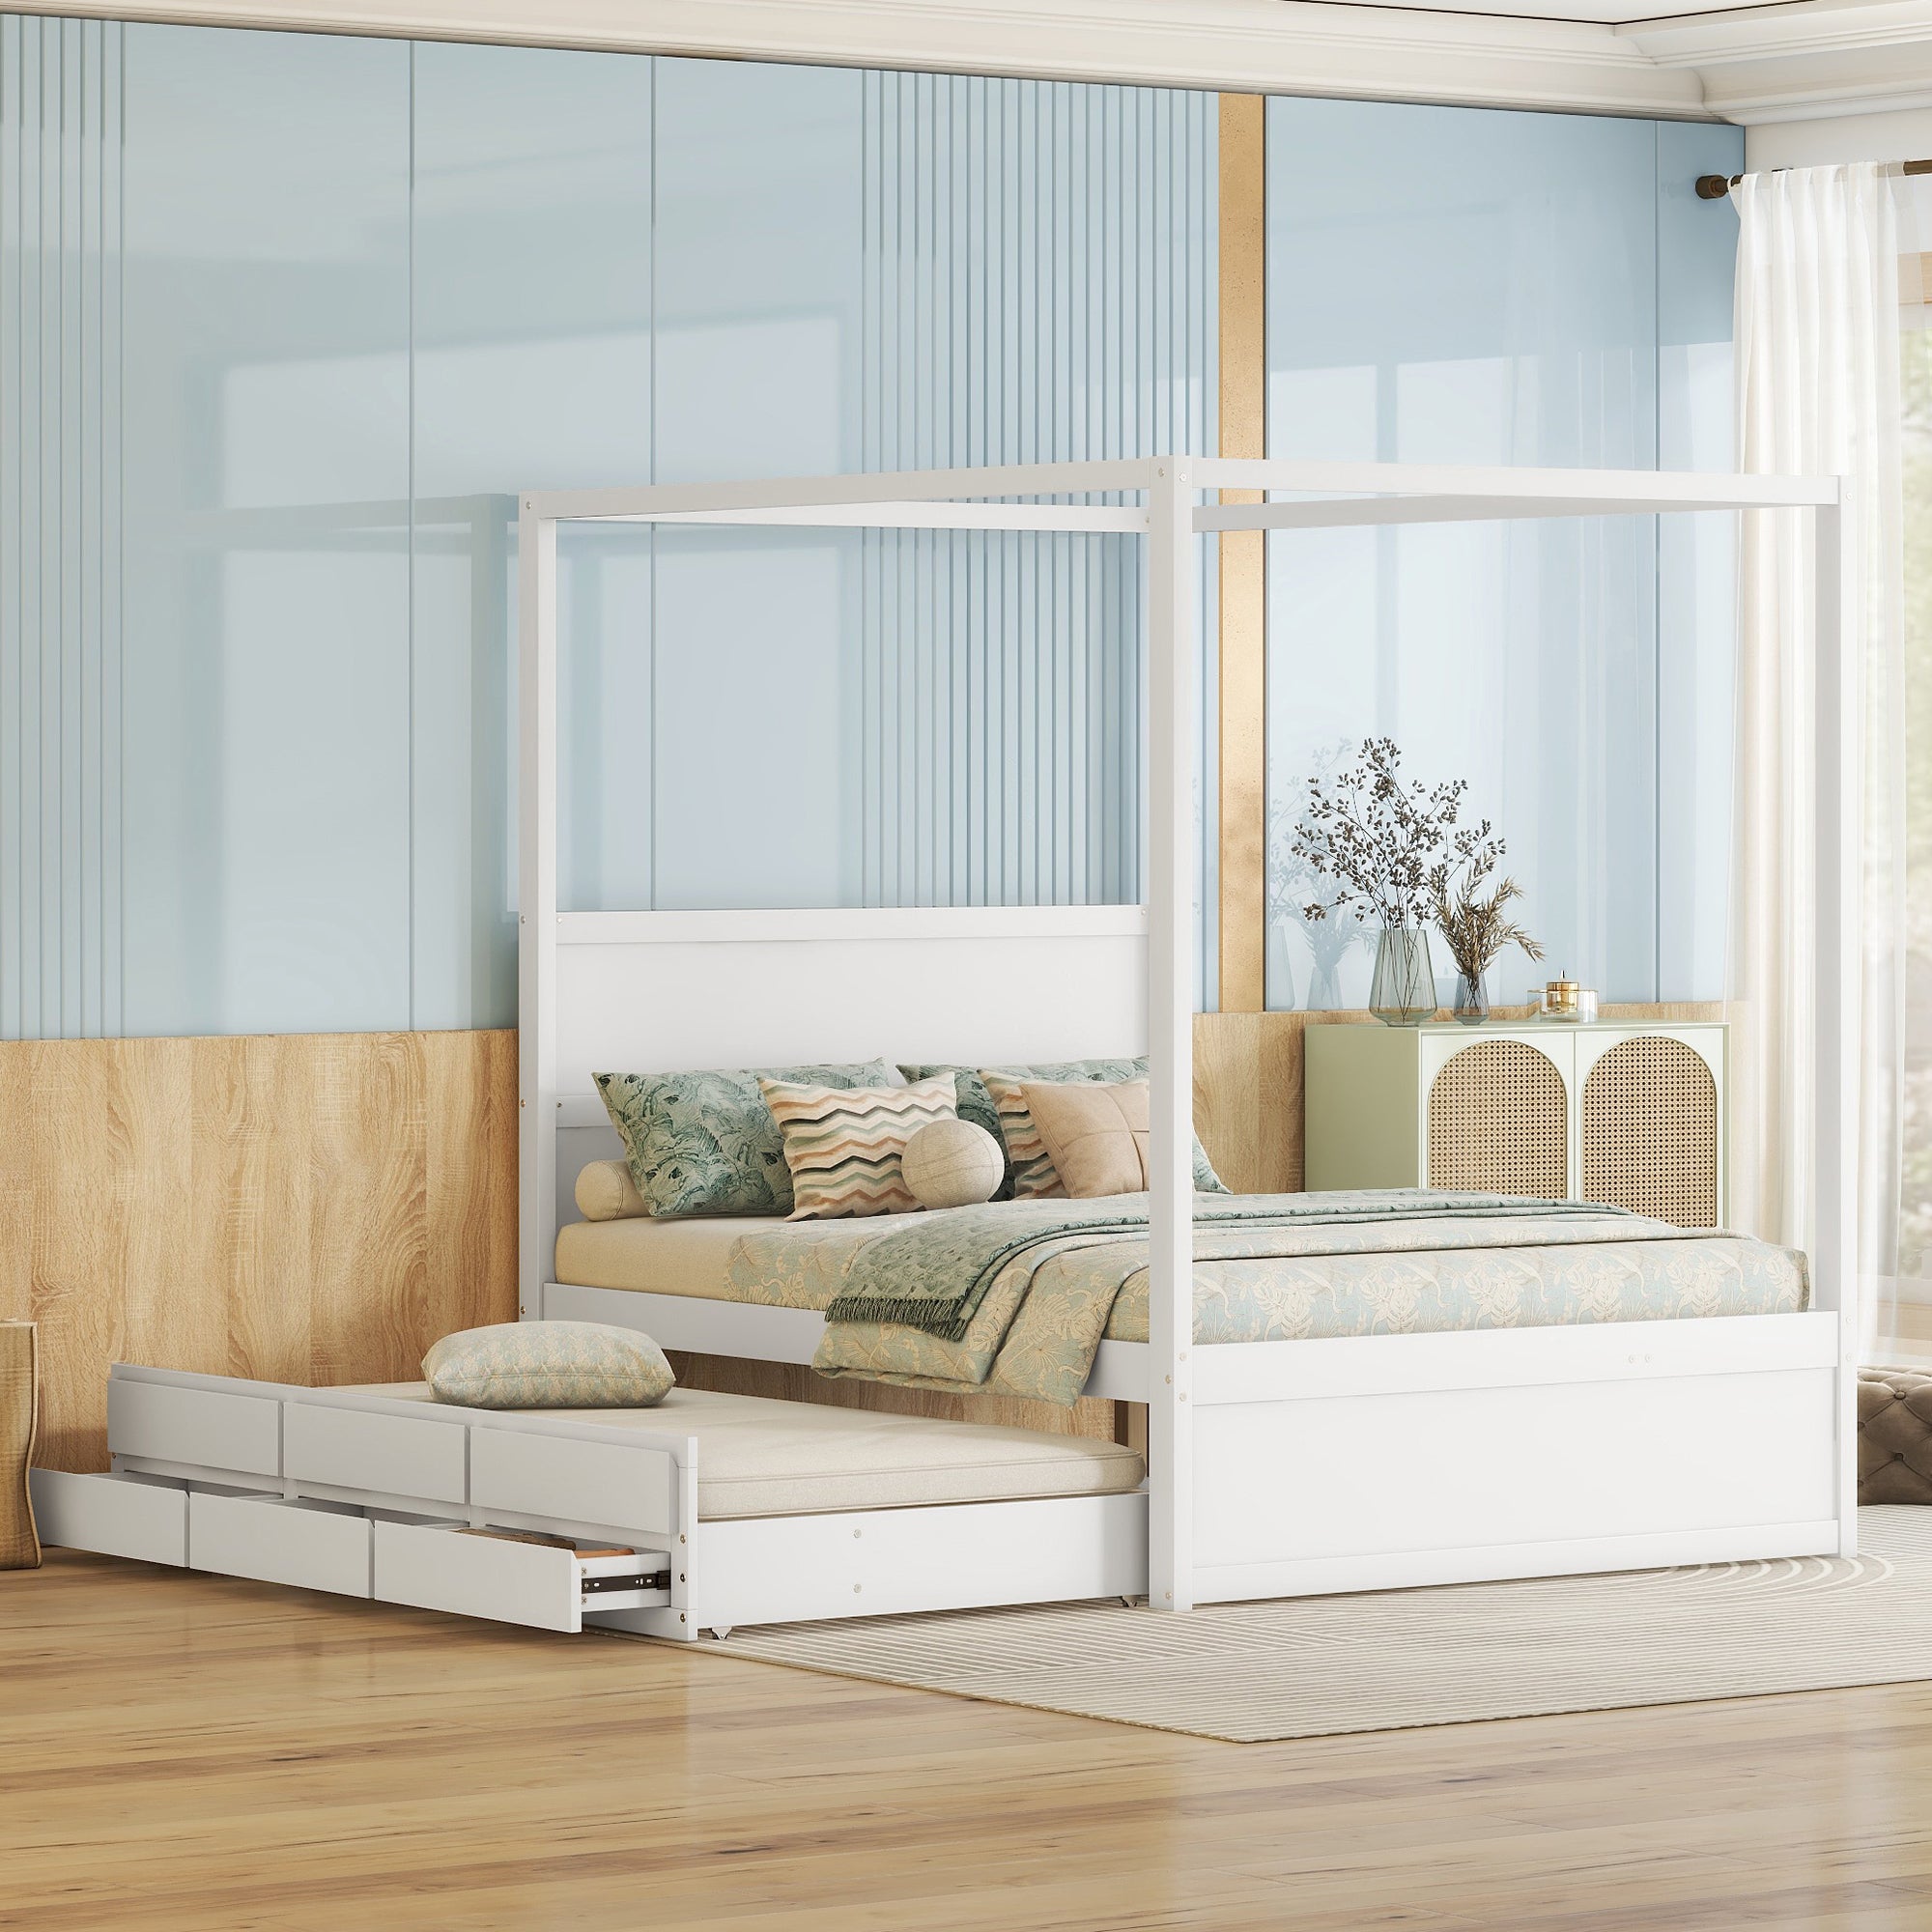 okwish 140 x 200 cm Elegantes und stilvolles Himmelbett, Plattformbett mit ausziehbarem Einzelbett und drei Staufächern, weiß